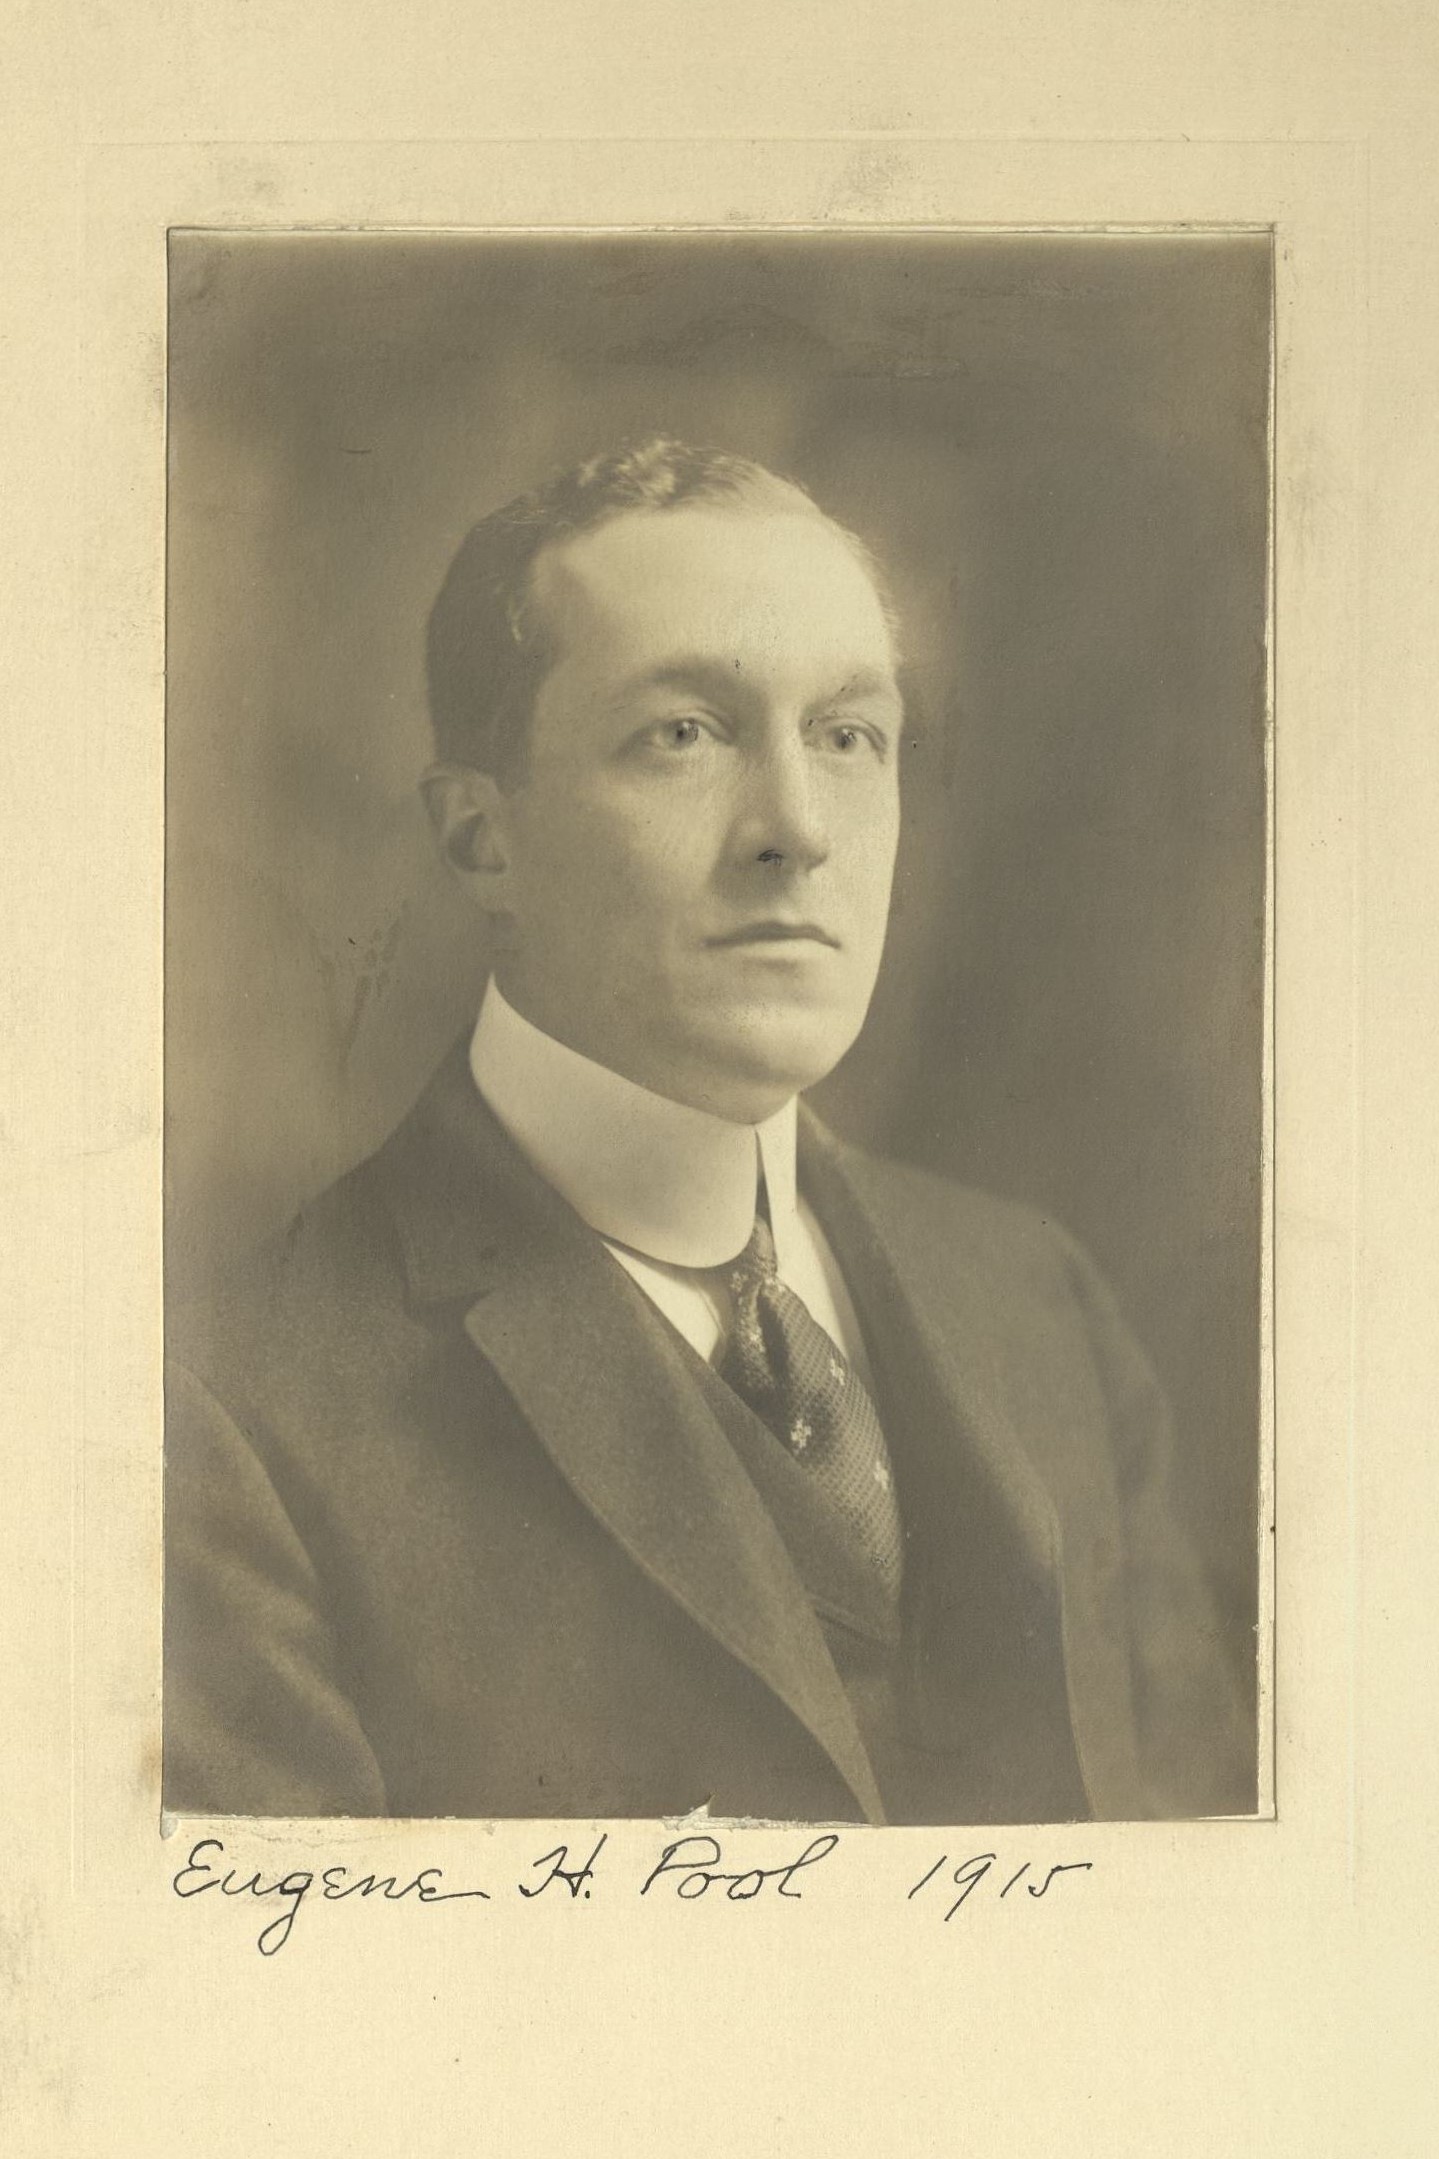 Member portrait of Eugene H. Pool